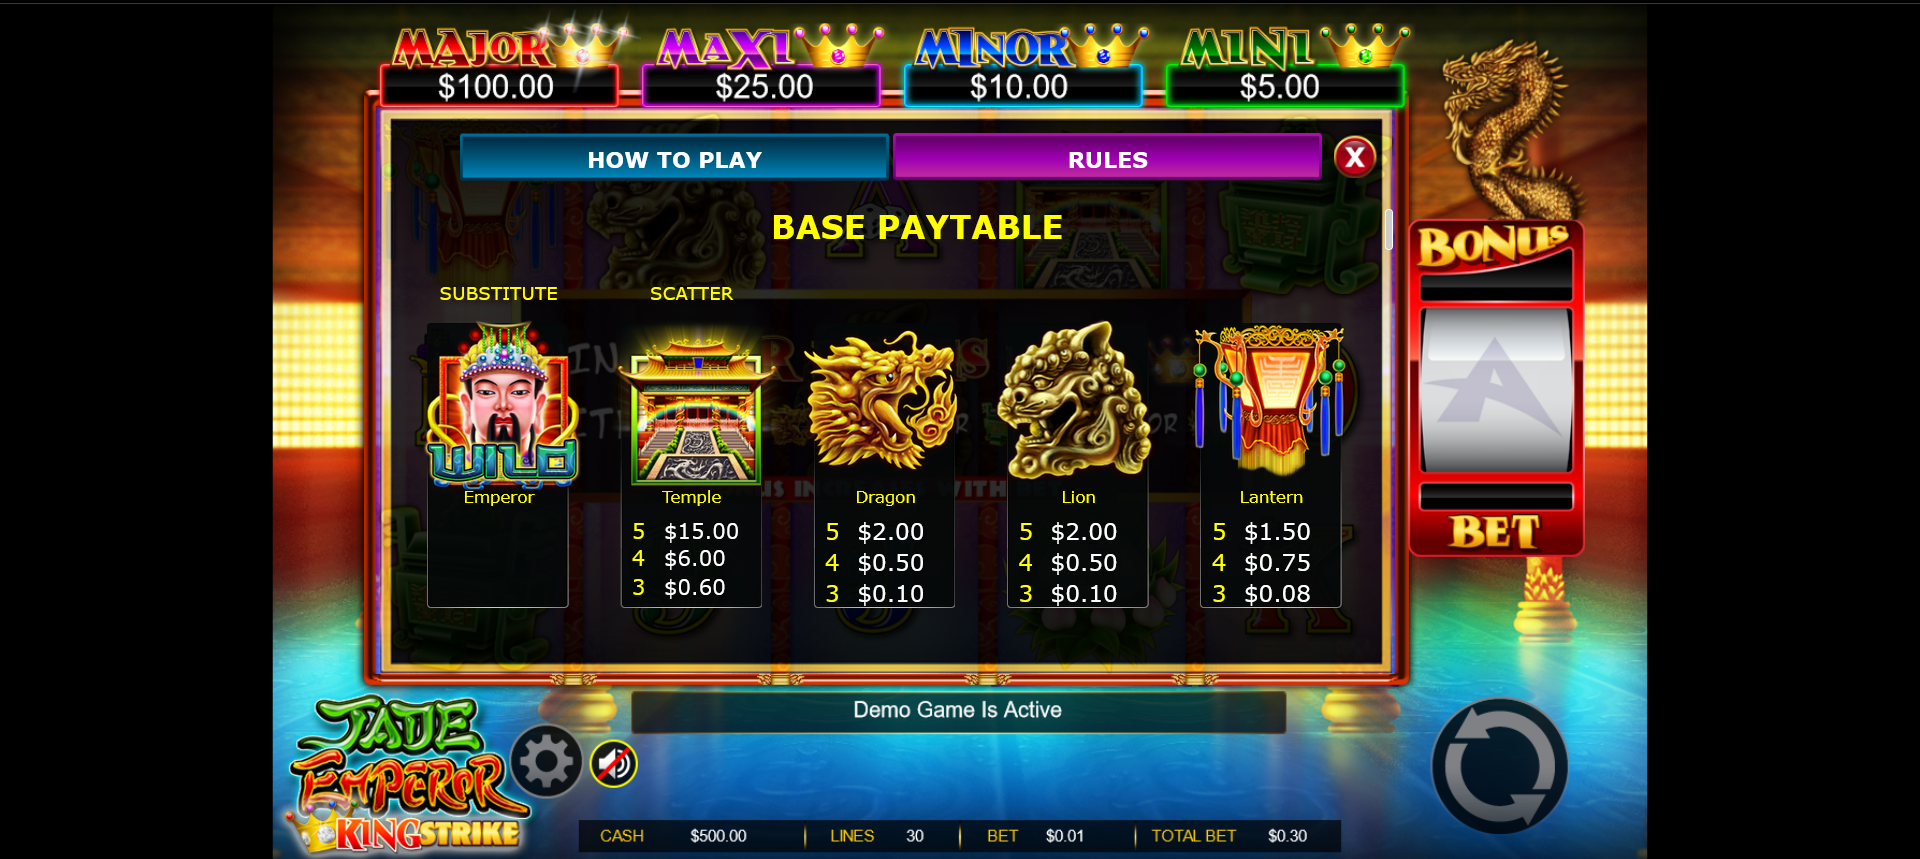 paytable della slot machine jade emperor